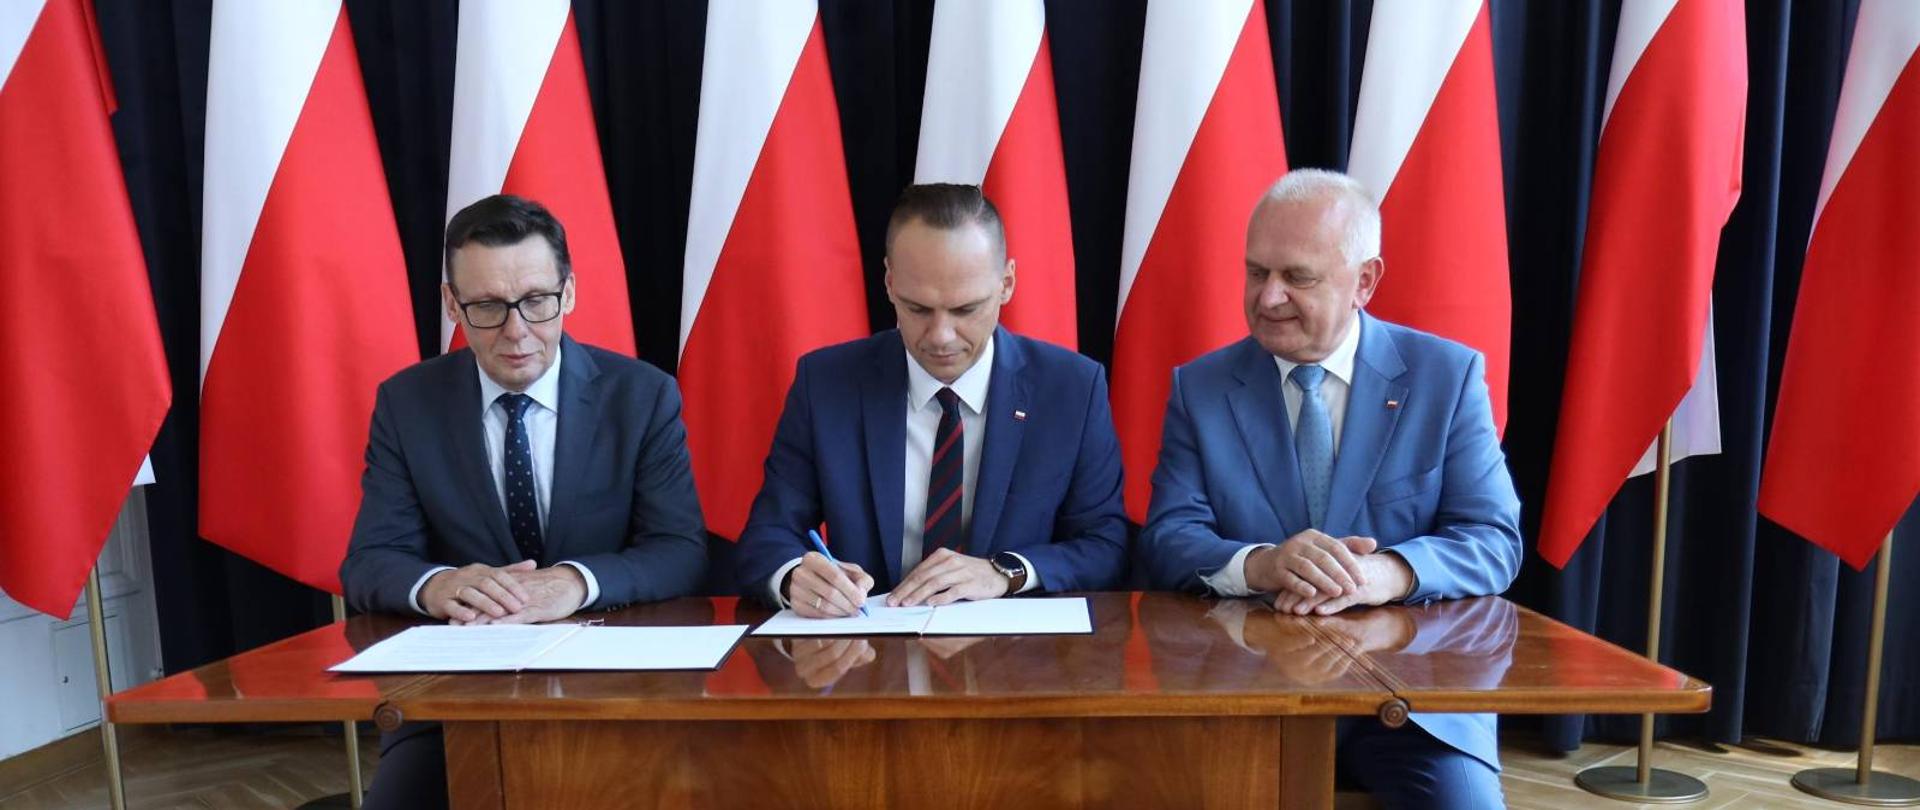 Minister Rafał Weber siedzi przy stole i podpsuje umowę, po lewej stronie siedzi poseł Marek Ast, po prawej stronie wojewoda Władysław Dajczak. W tle biało-czerwone flagi.